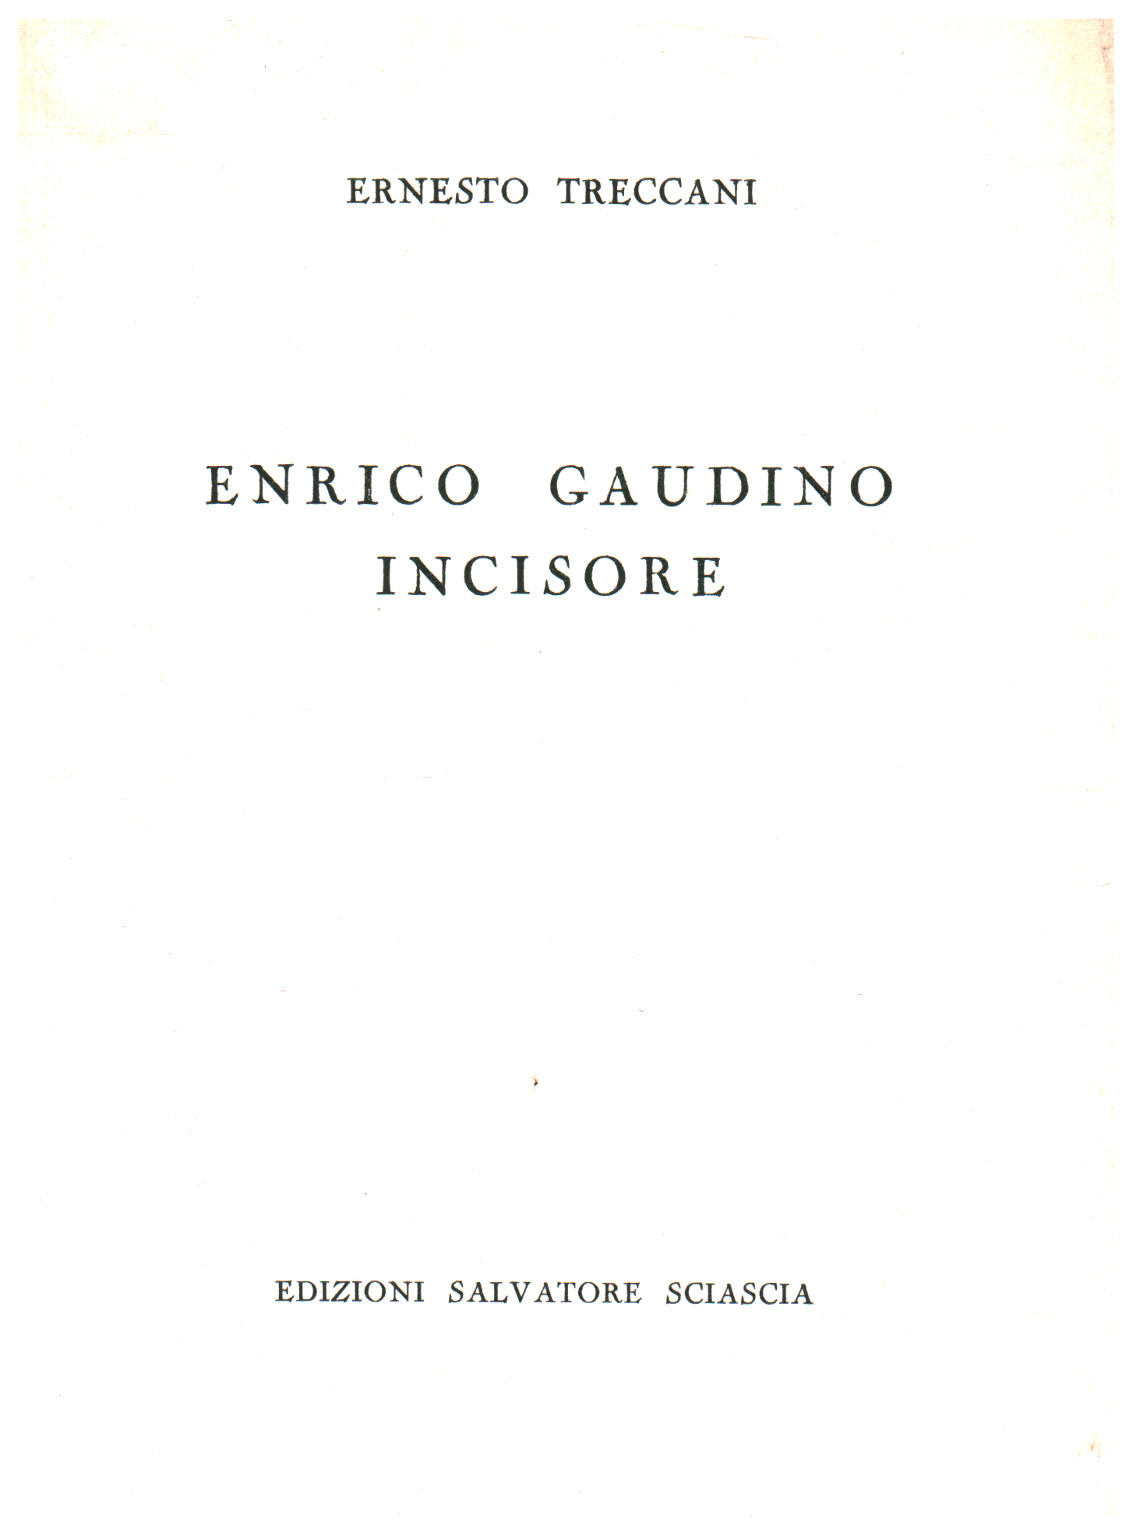 Enrico Gaudino graveur, s.zu.